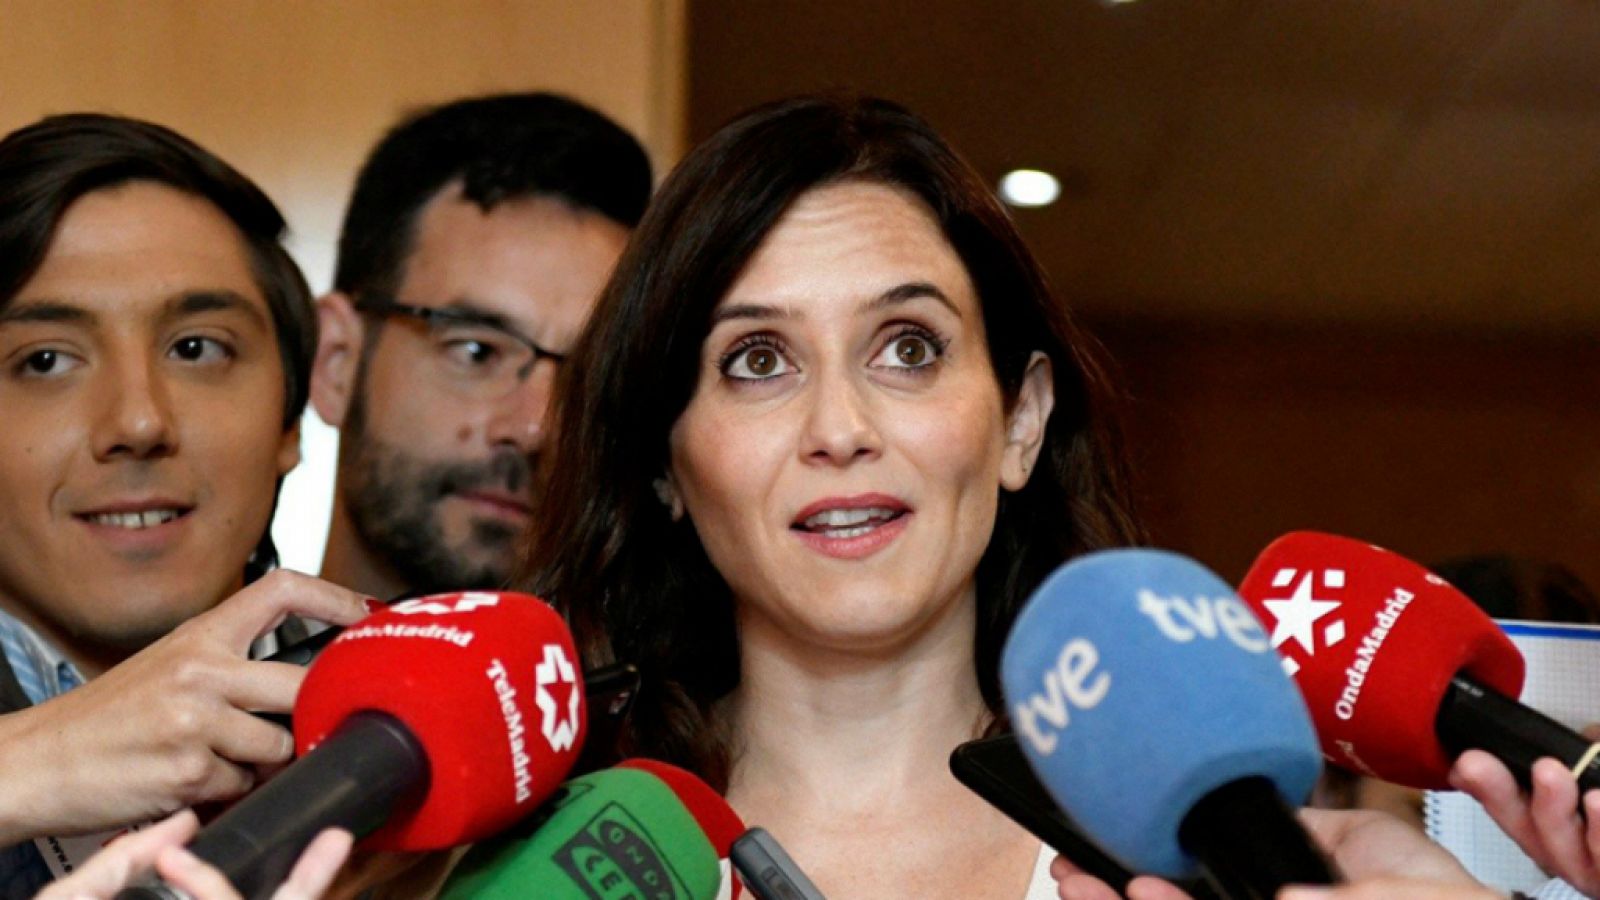 14 horas - El PP reconoce que prometieron concejalías a Vox en Madrid - Escchar ahora